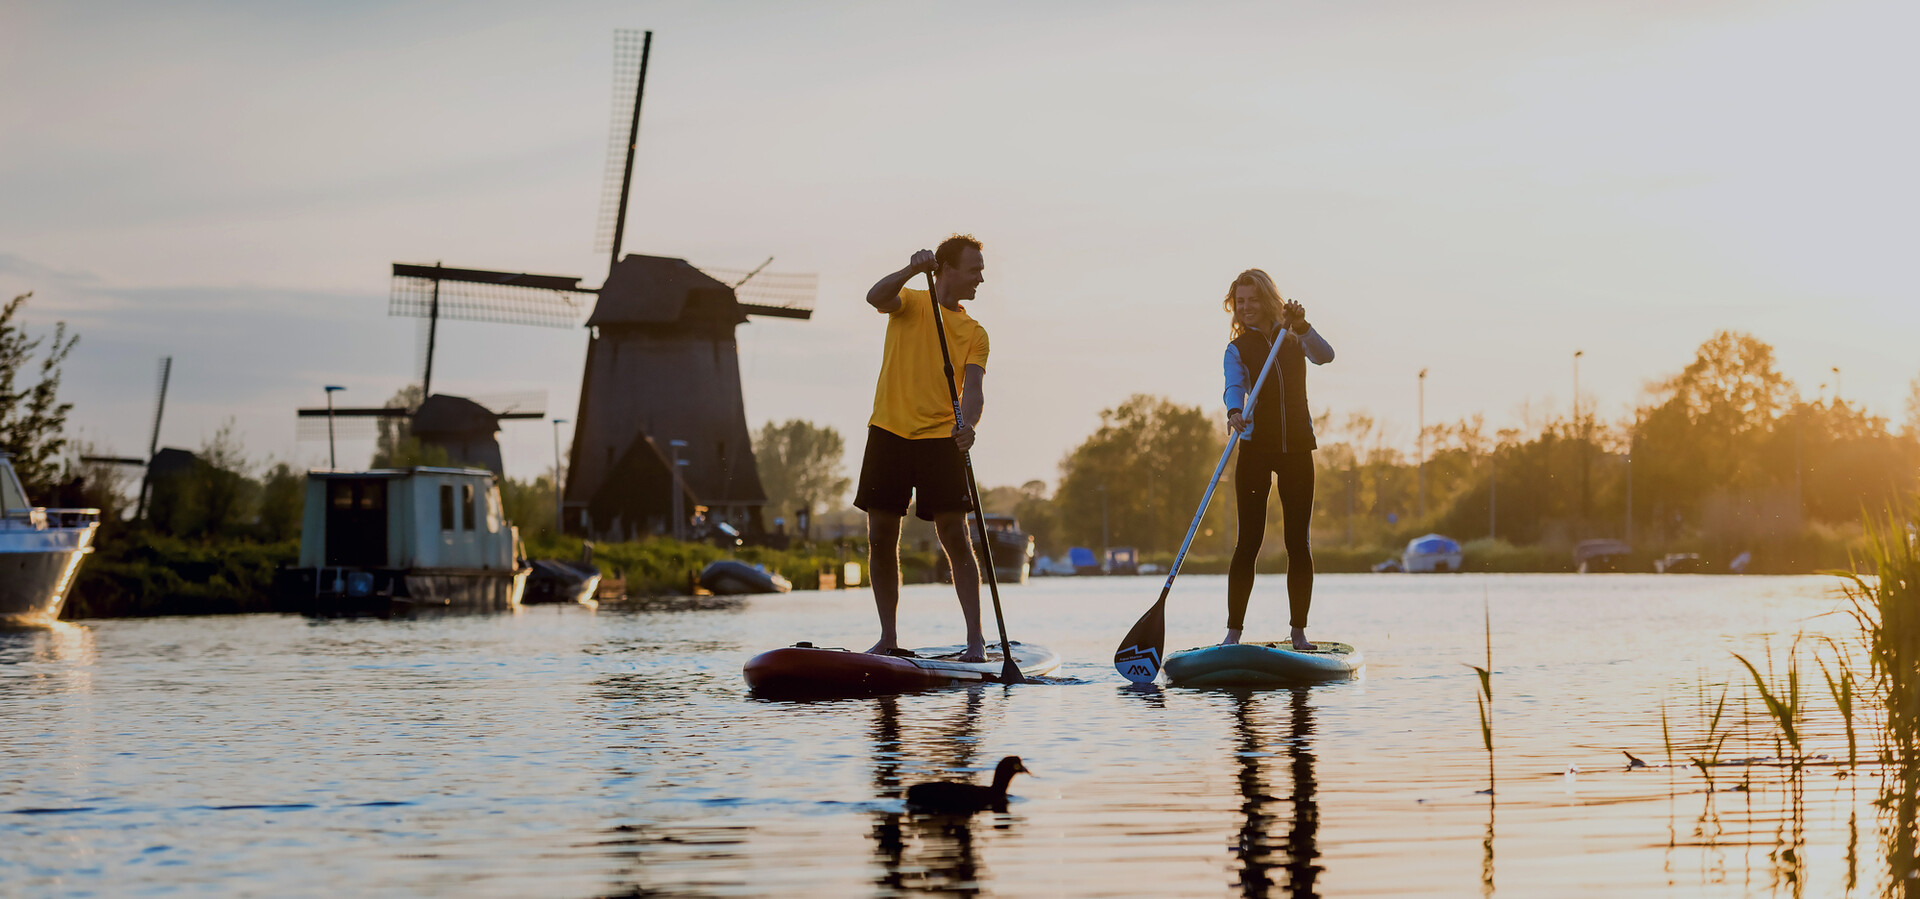 Outdoor activities in the beautiful surroundings of Alkmaar